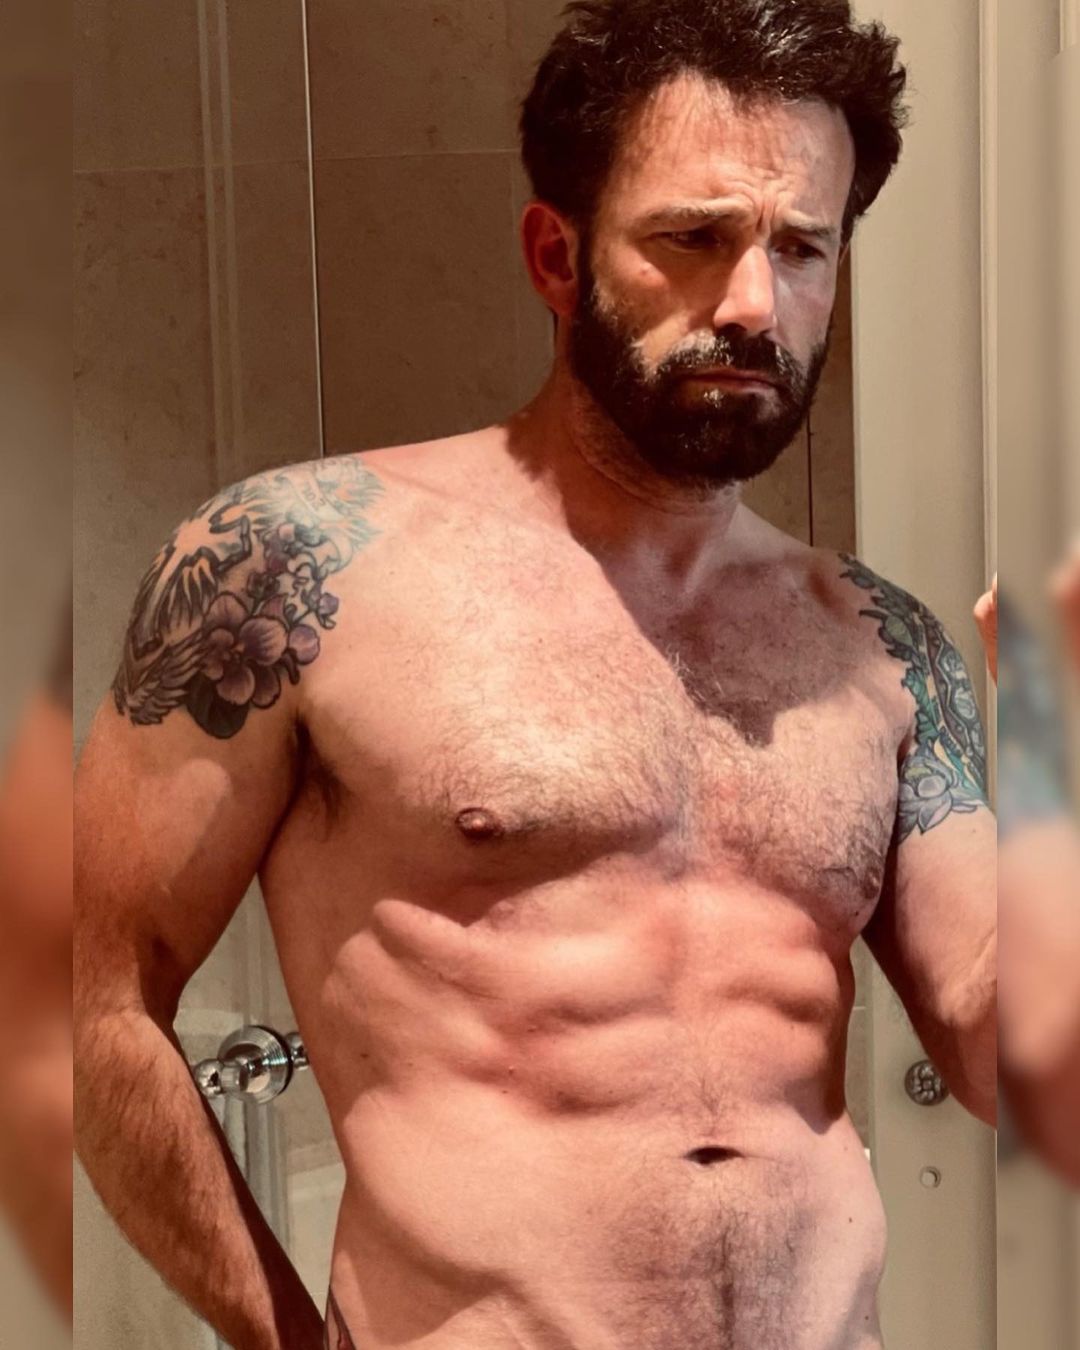 JLo compartió una imagen de Ben Affleck desnudo para celebrar el día del padre, lo cual causó todo tipo de comentarios en redes
Foto: Instagram/Jennifer López